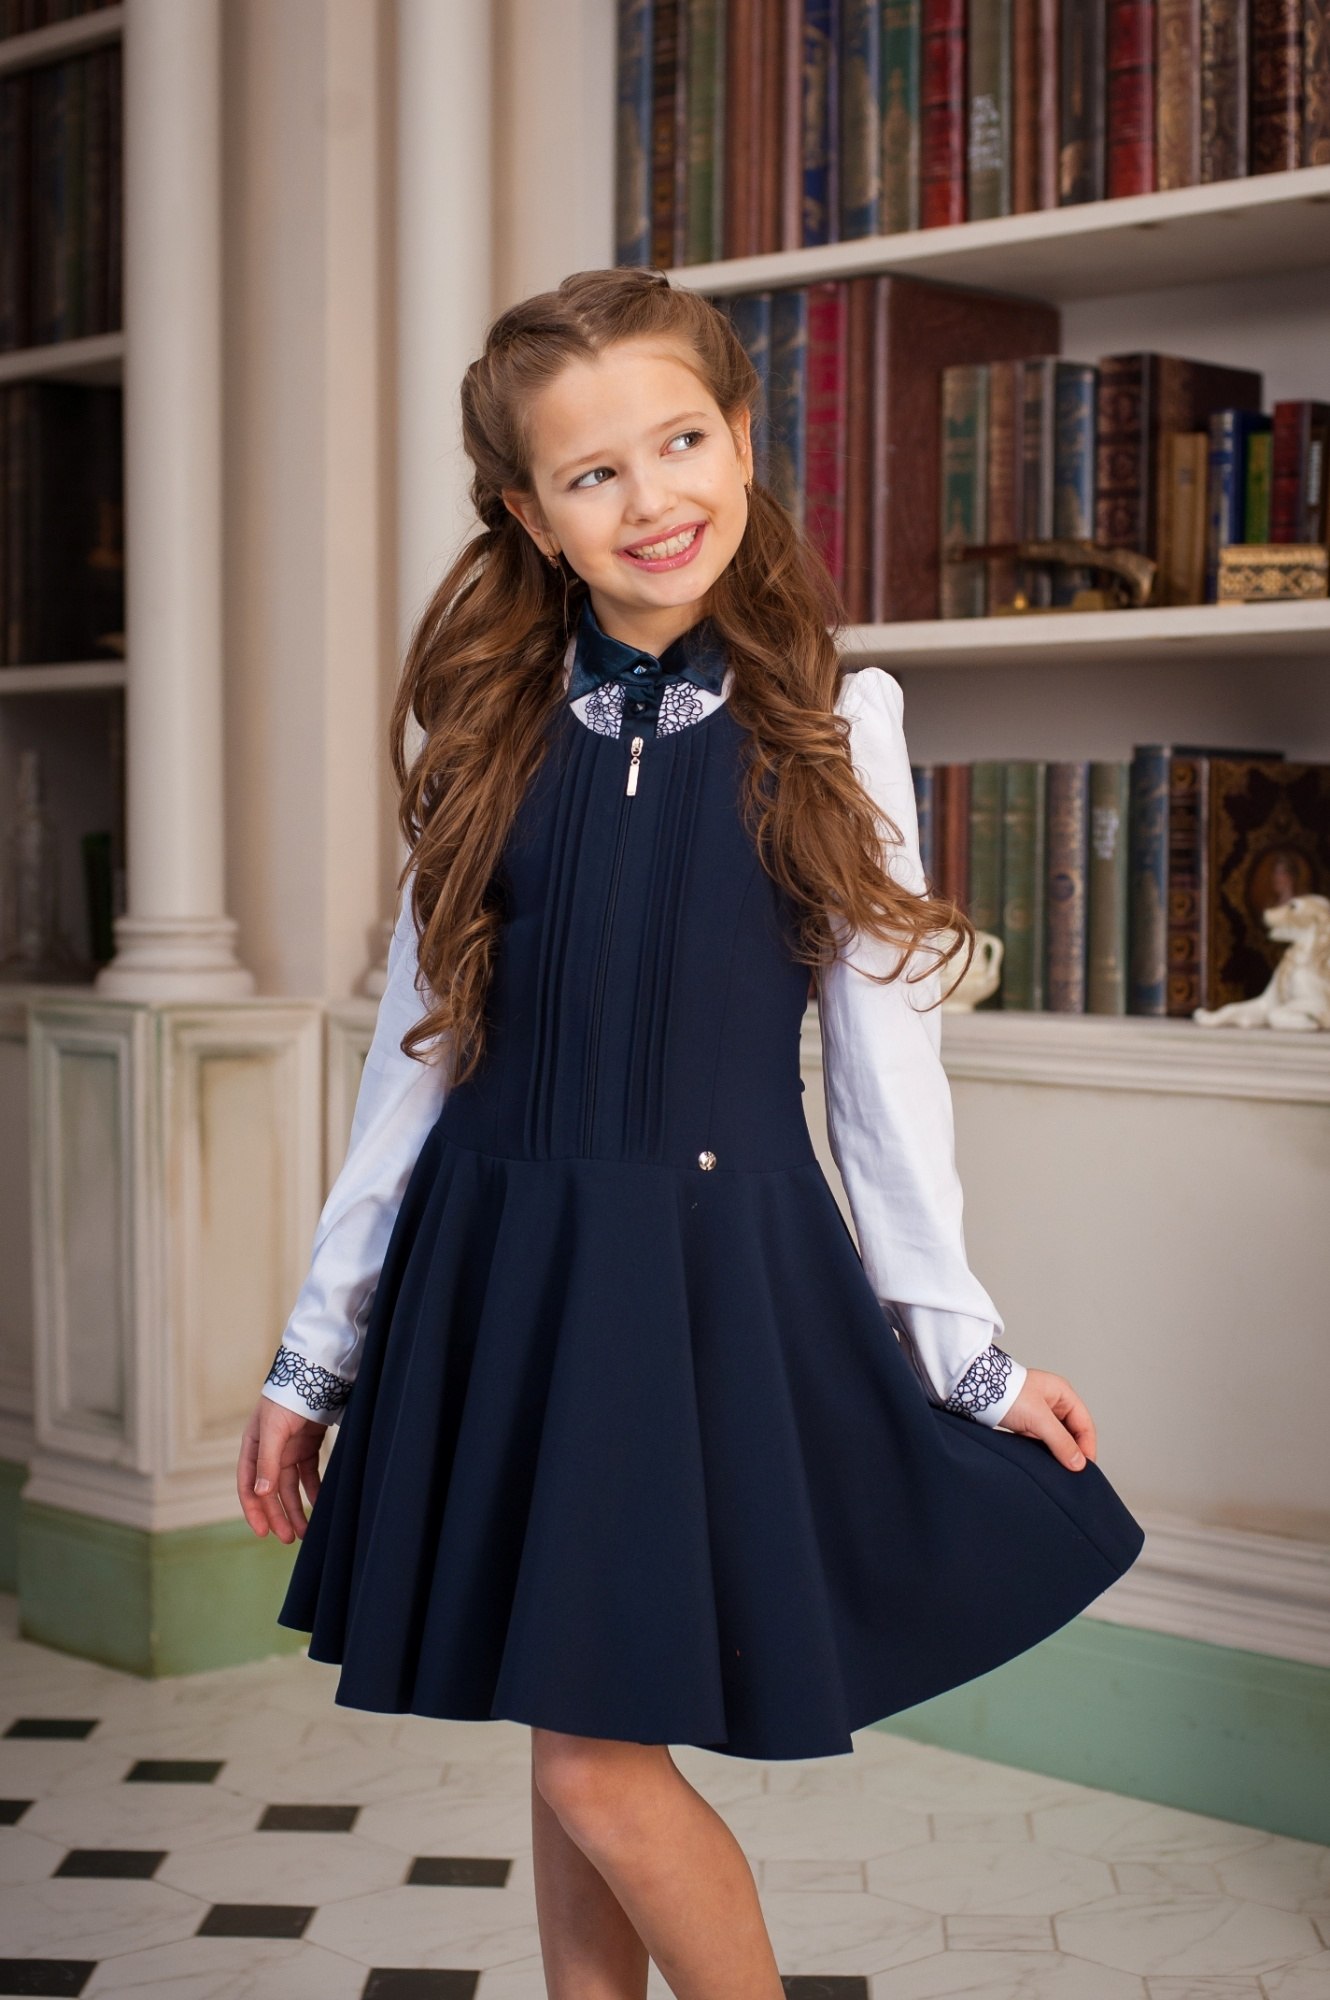 Купить одежду для школы. Школьная юбка Рио Комби (ШФ-1125). Сарафан для школы. Школьная форма для девочек синяя.